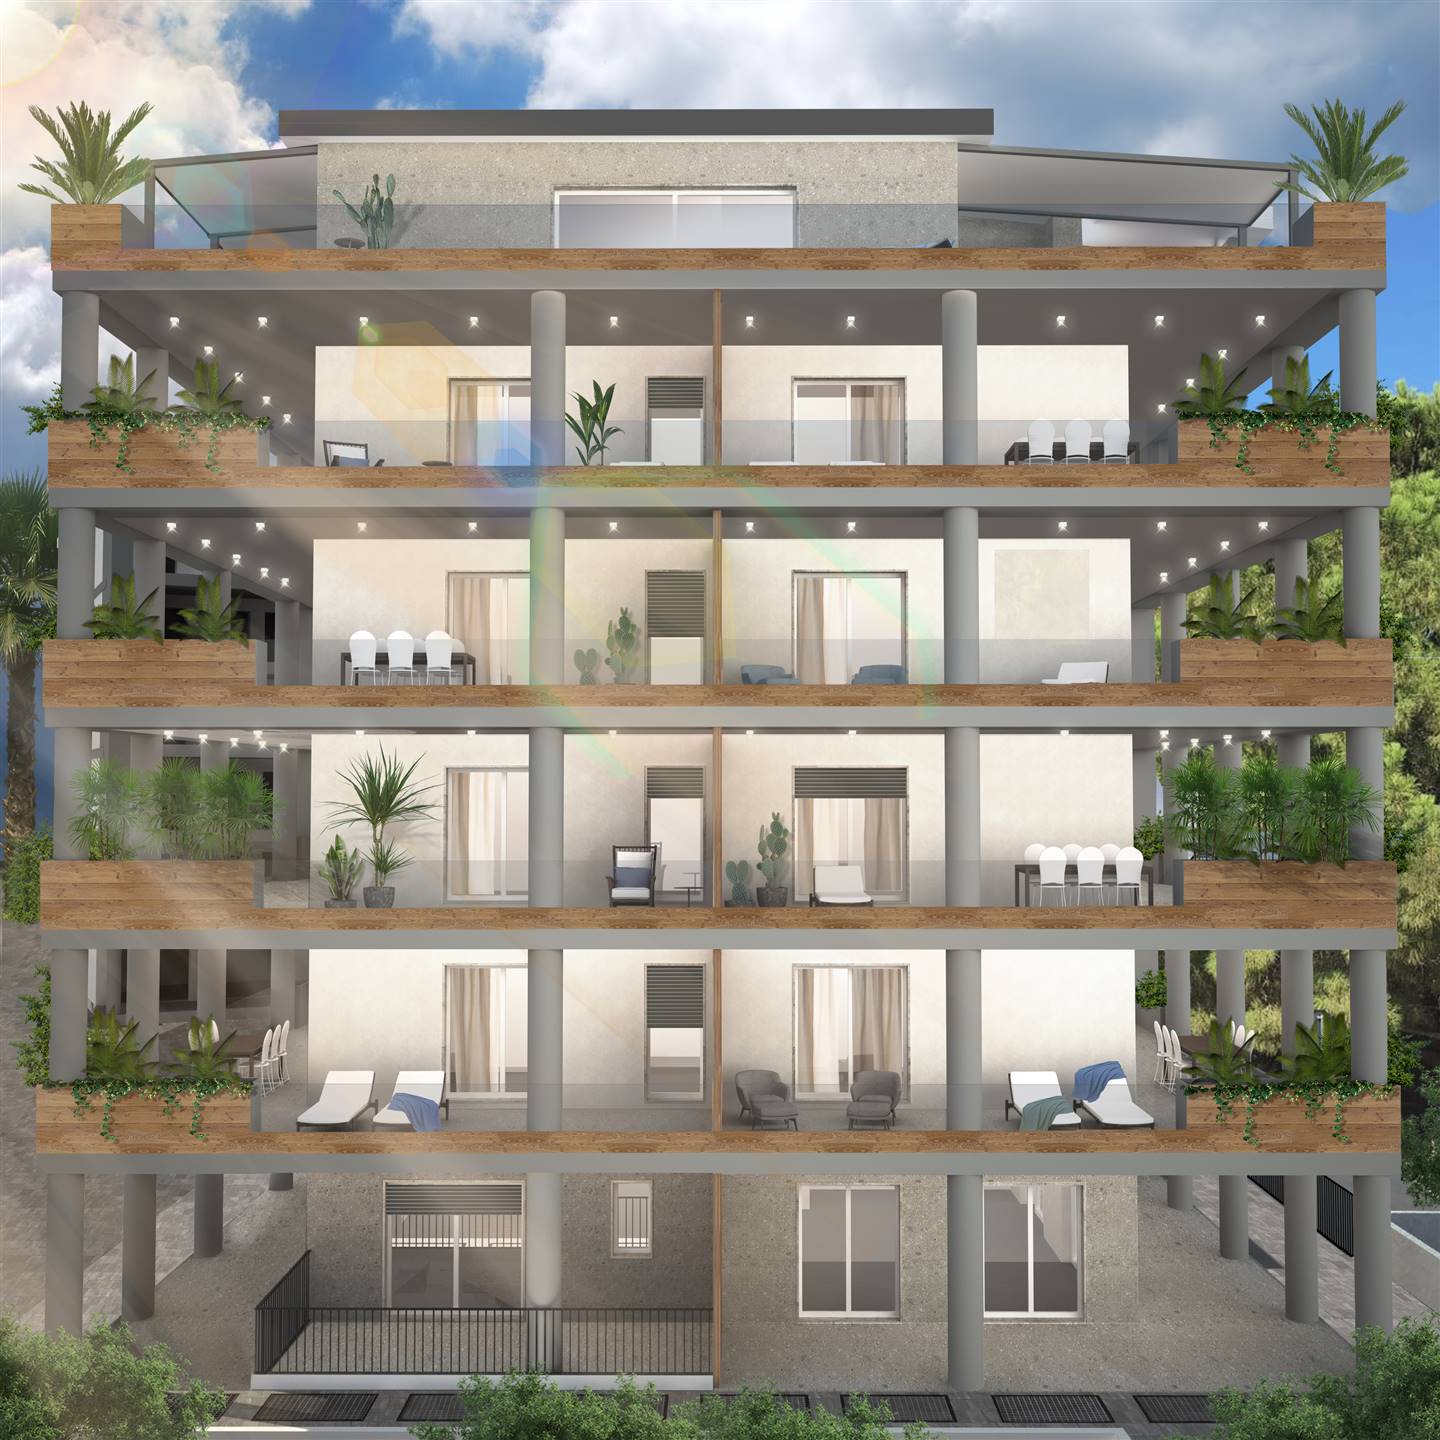 V 690 L 'Aliservice Immobiliare propone in vendita , a Vasto Marina, diverse tipologie di appartamenti di nuova costruzione all’interno di un 